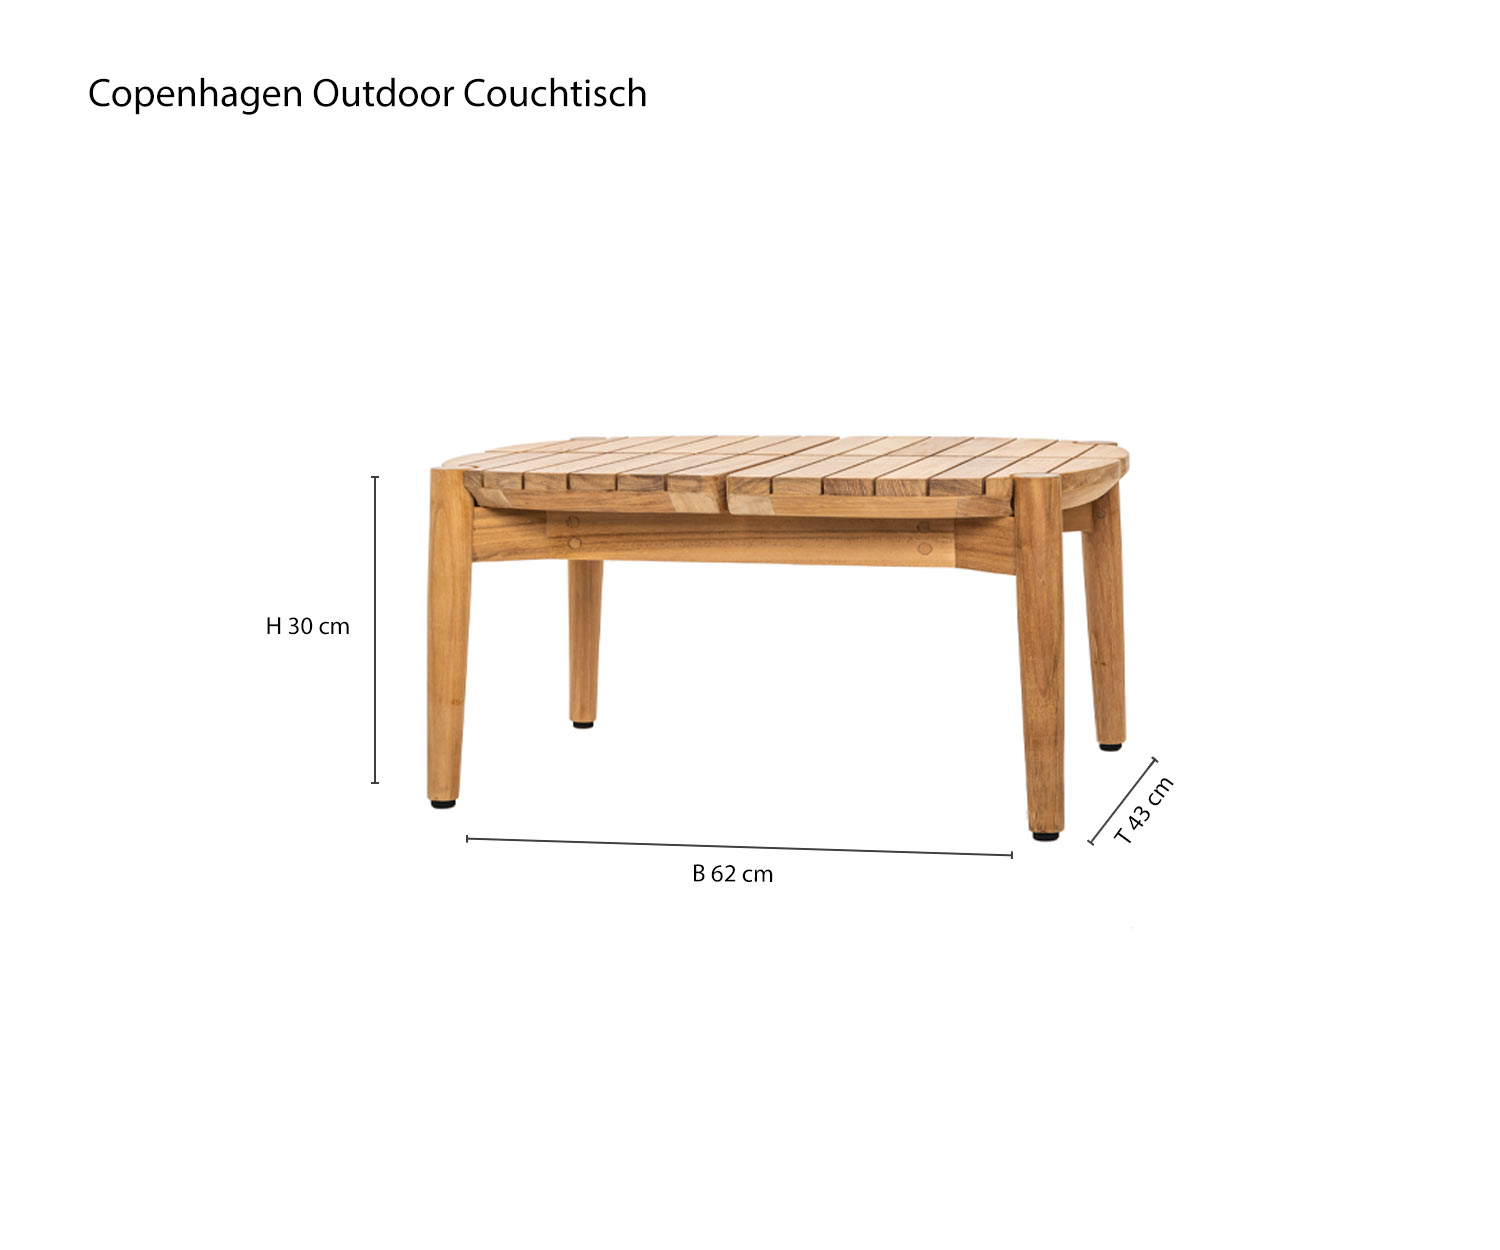 Dimensioni del tavolo da giardino Copenhagen